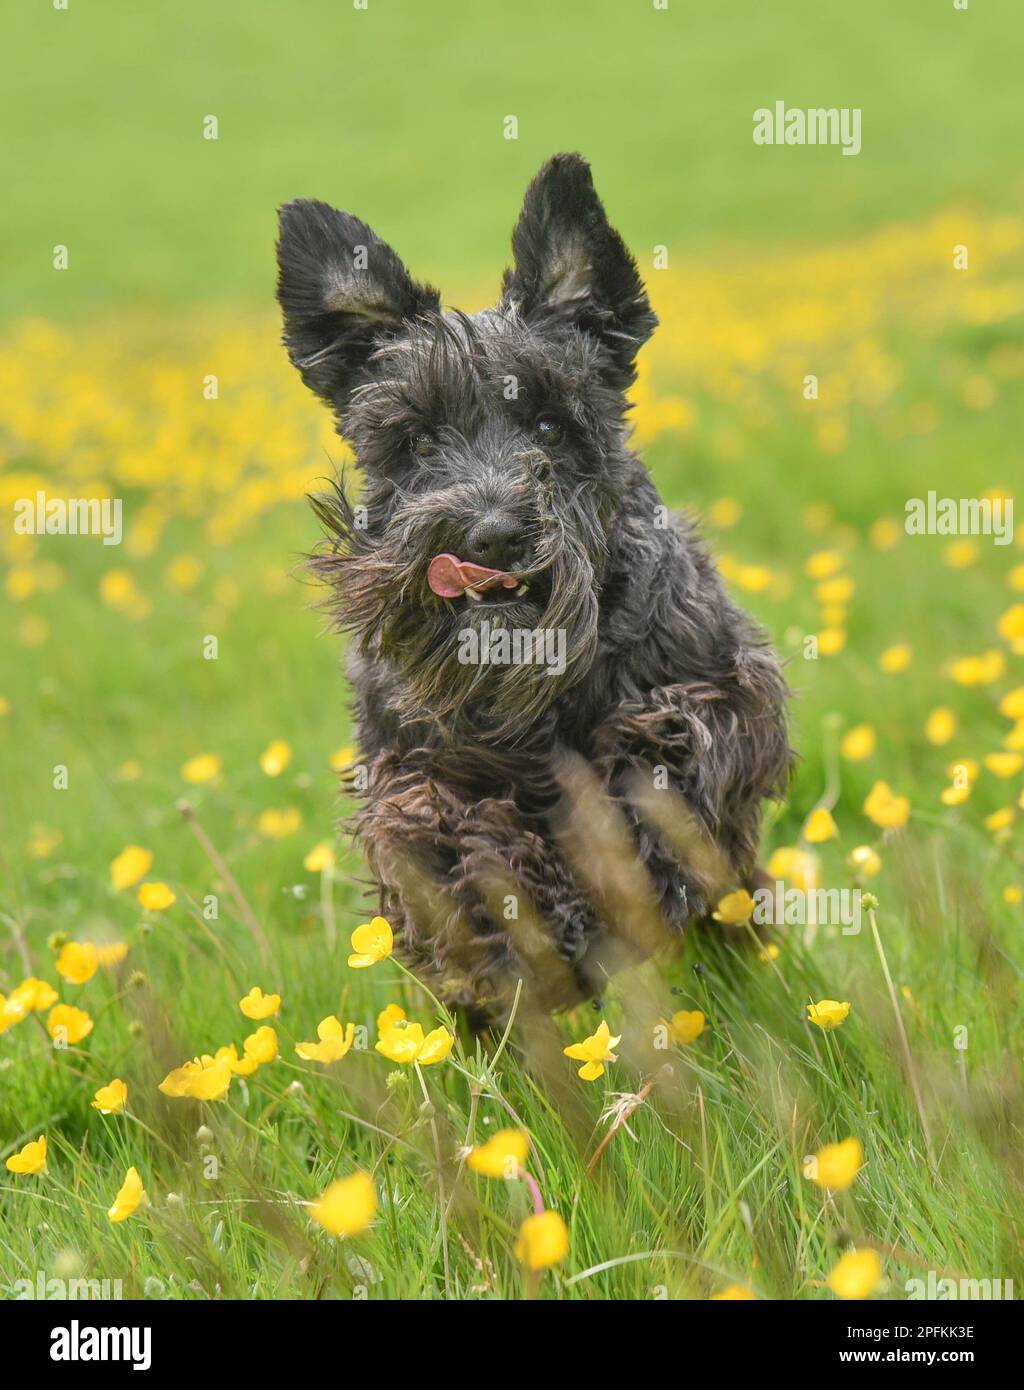 Gros plan d'action photo de chien miniature schnauzer heureux courant vers l'appareil photo à travers un champ de l'herbe longue et des tasses de beurre en été Banque D'Images